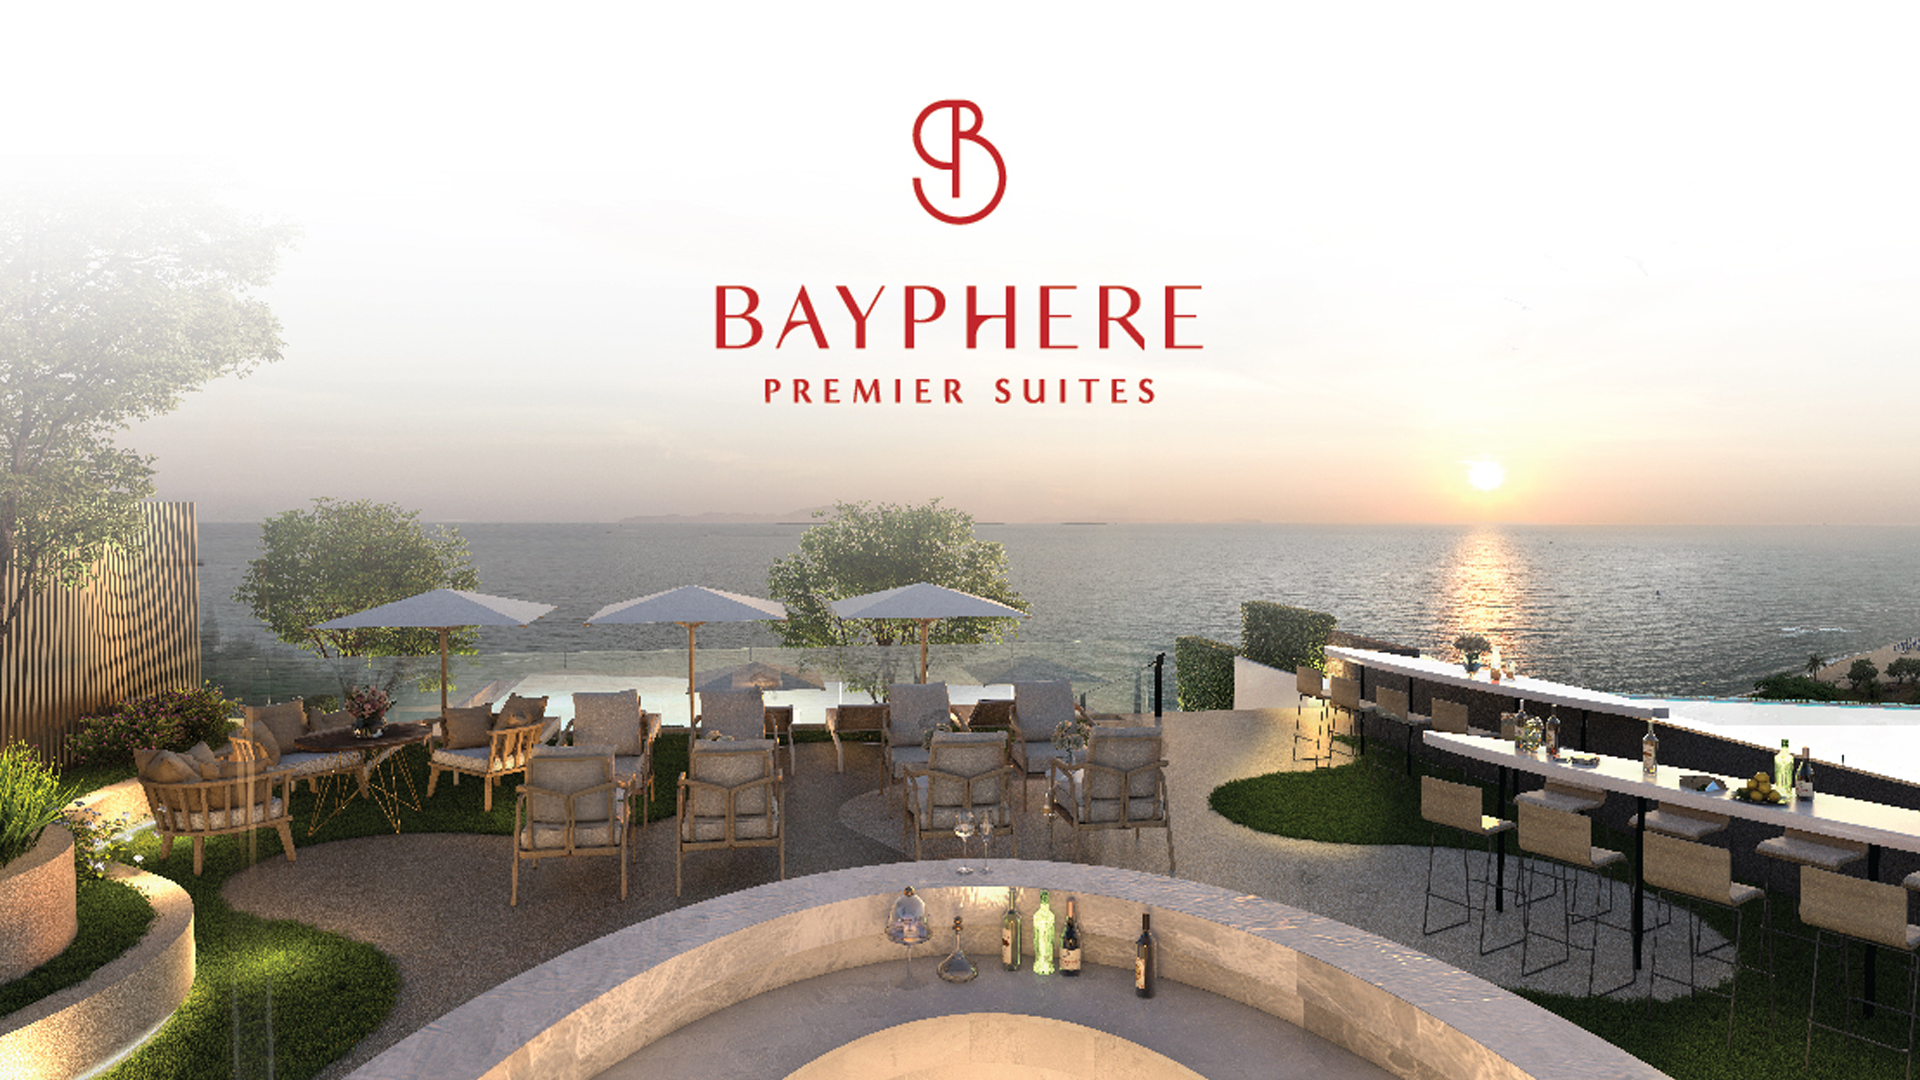 เบย์เฟียร์ พรีเมียร์ สวีท (Bayphere Premier Suites) : ภาพที่ 1